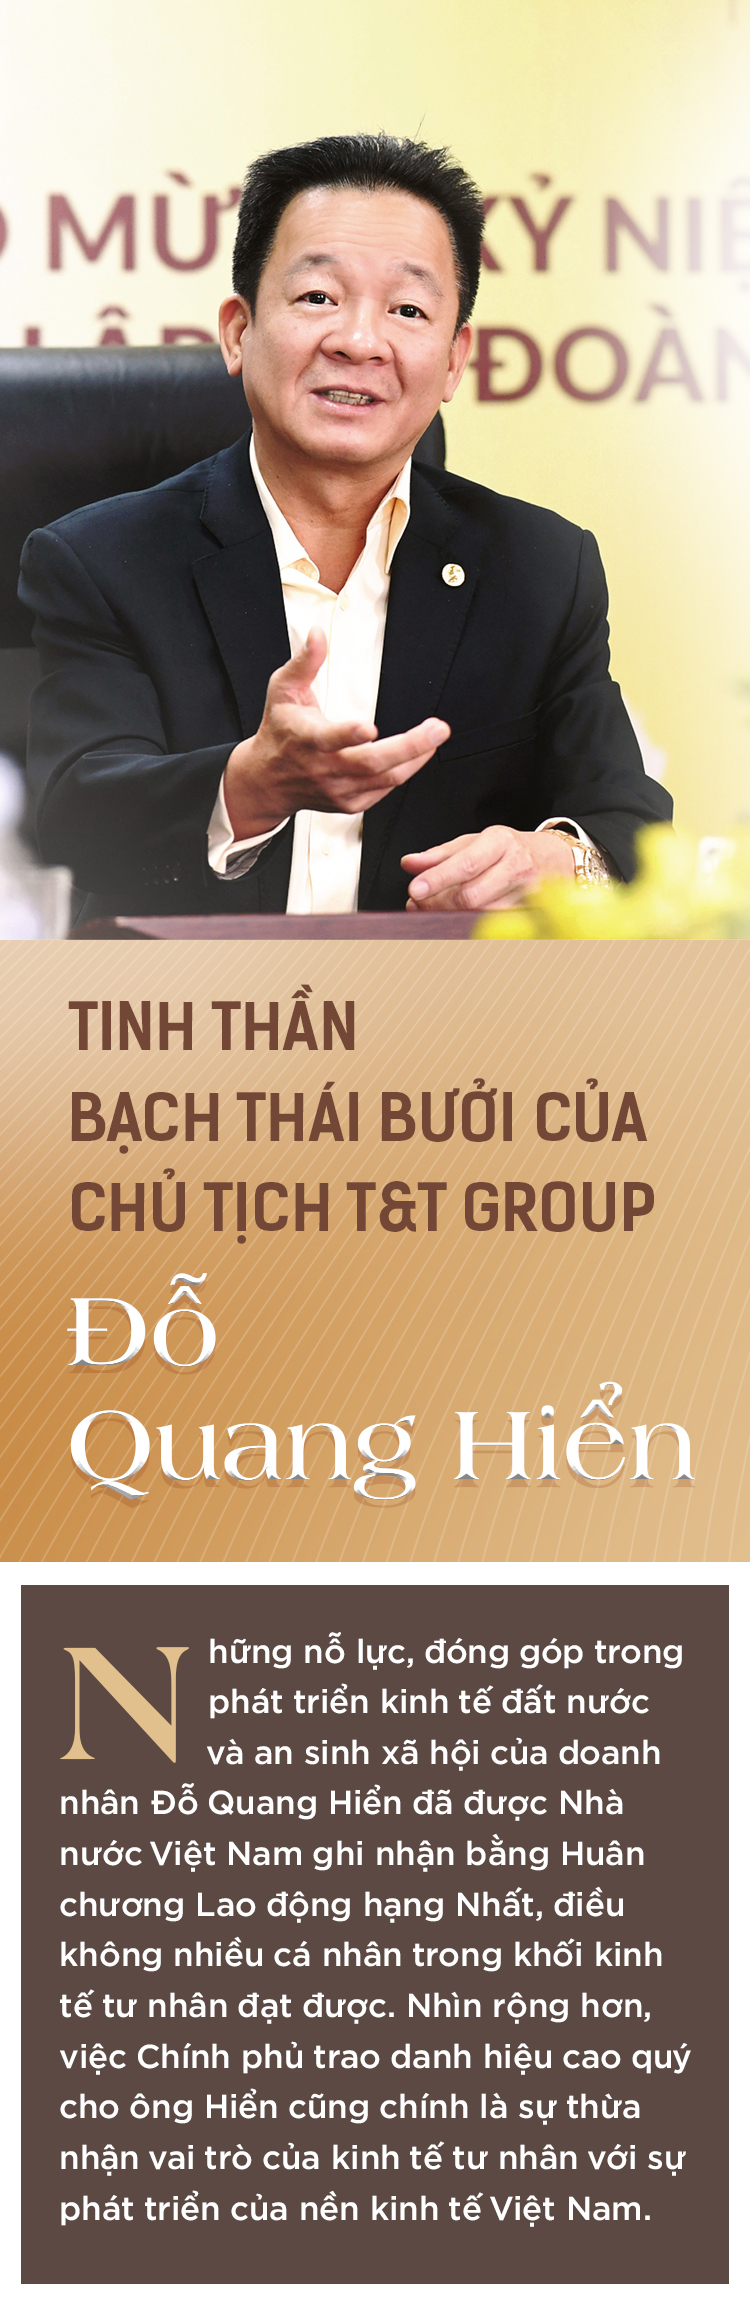 Tinh thần Bạch Thái Bưởi của Chủ tịch T&T Group Đỗ Quang Hiển